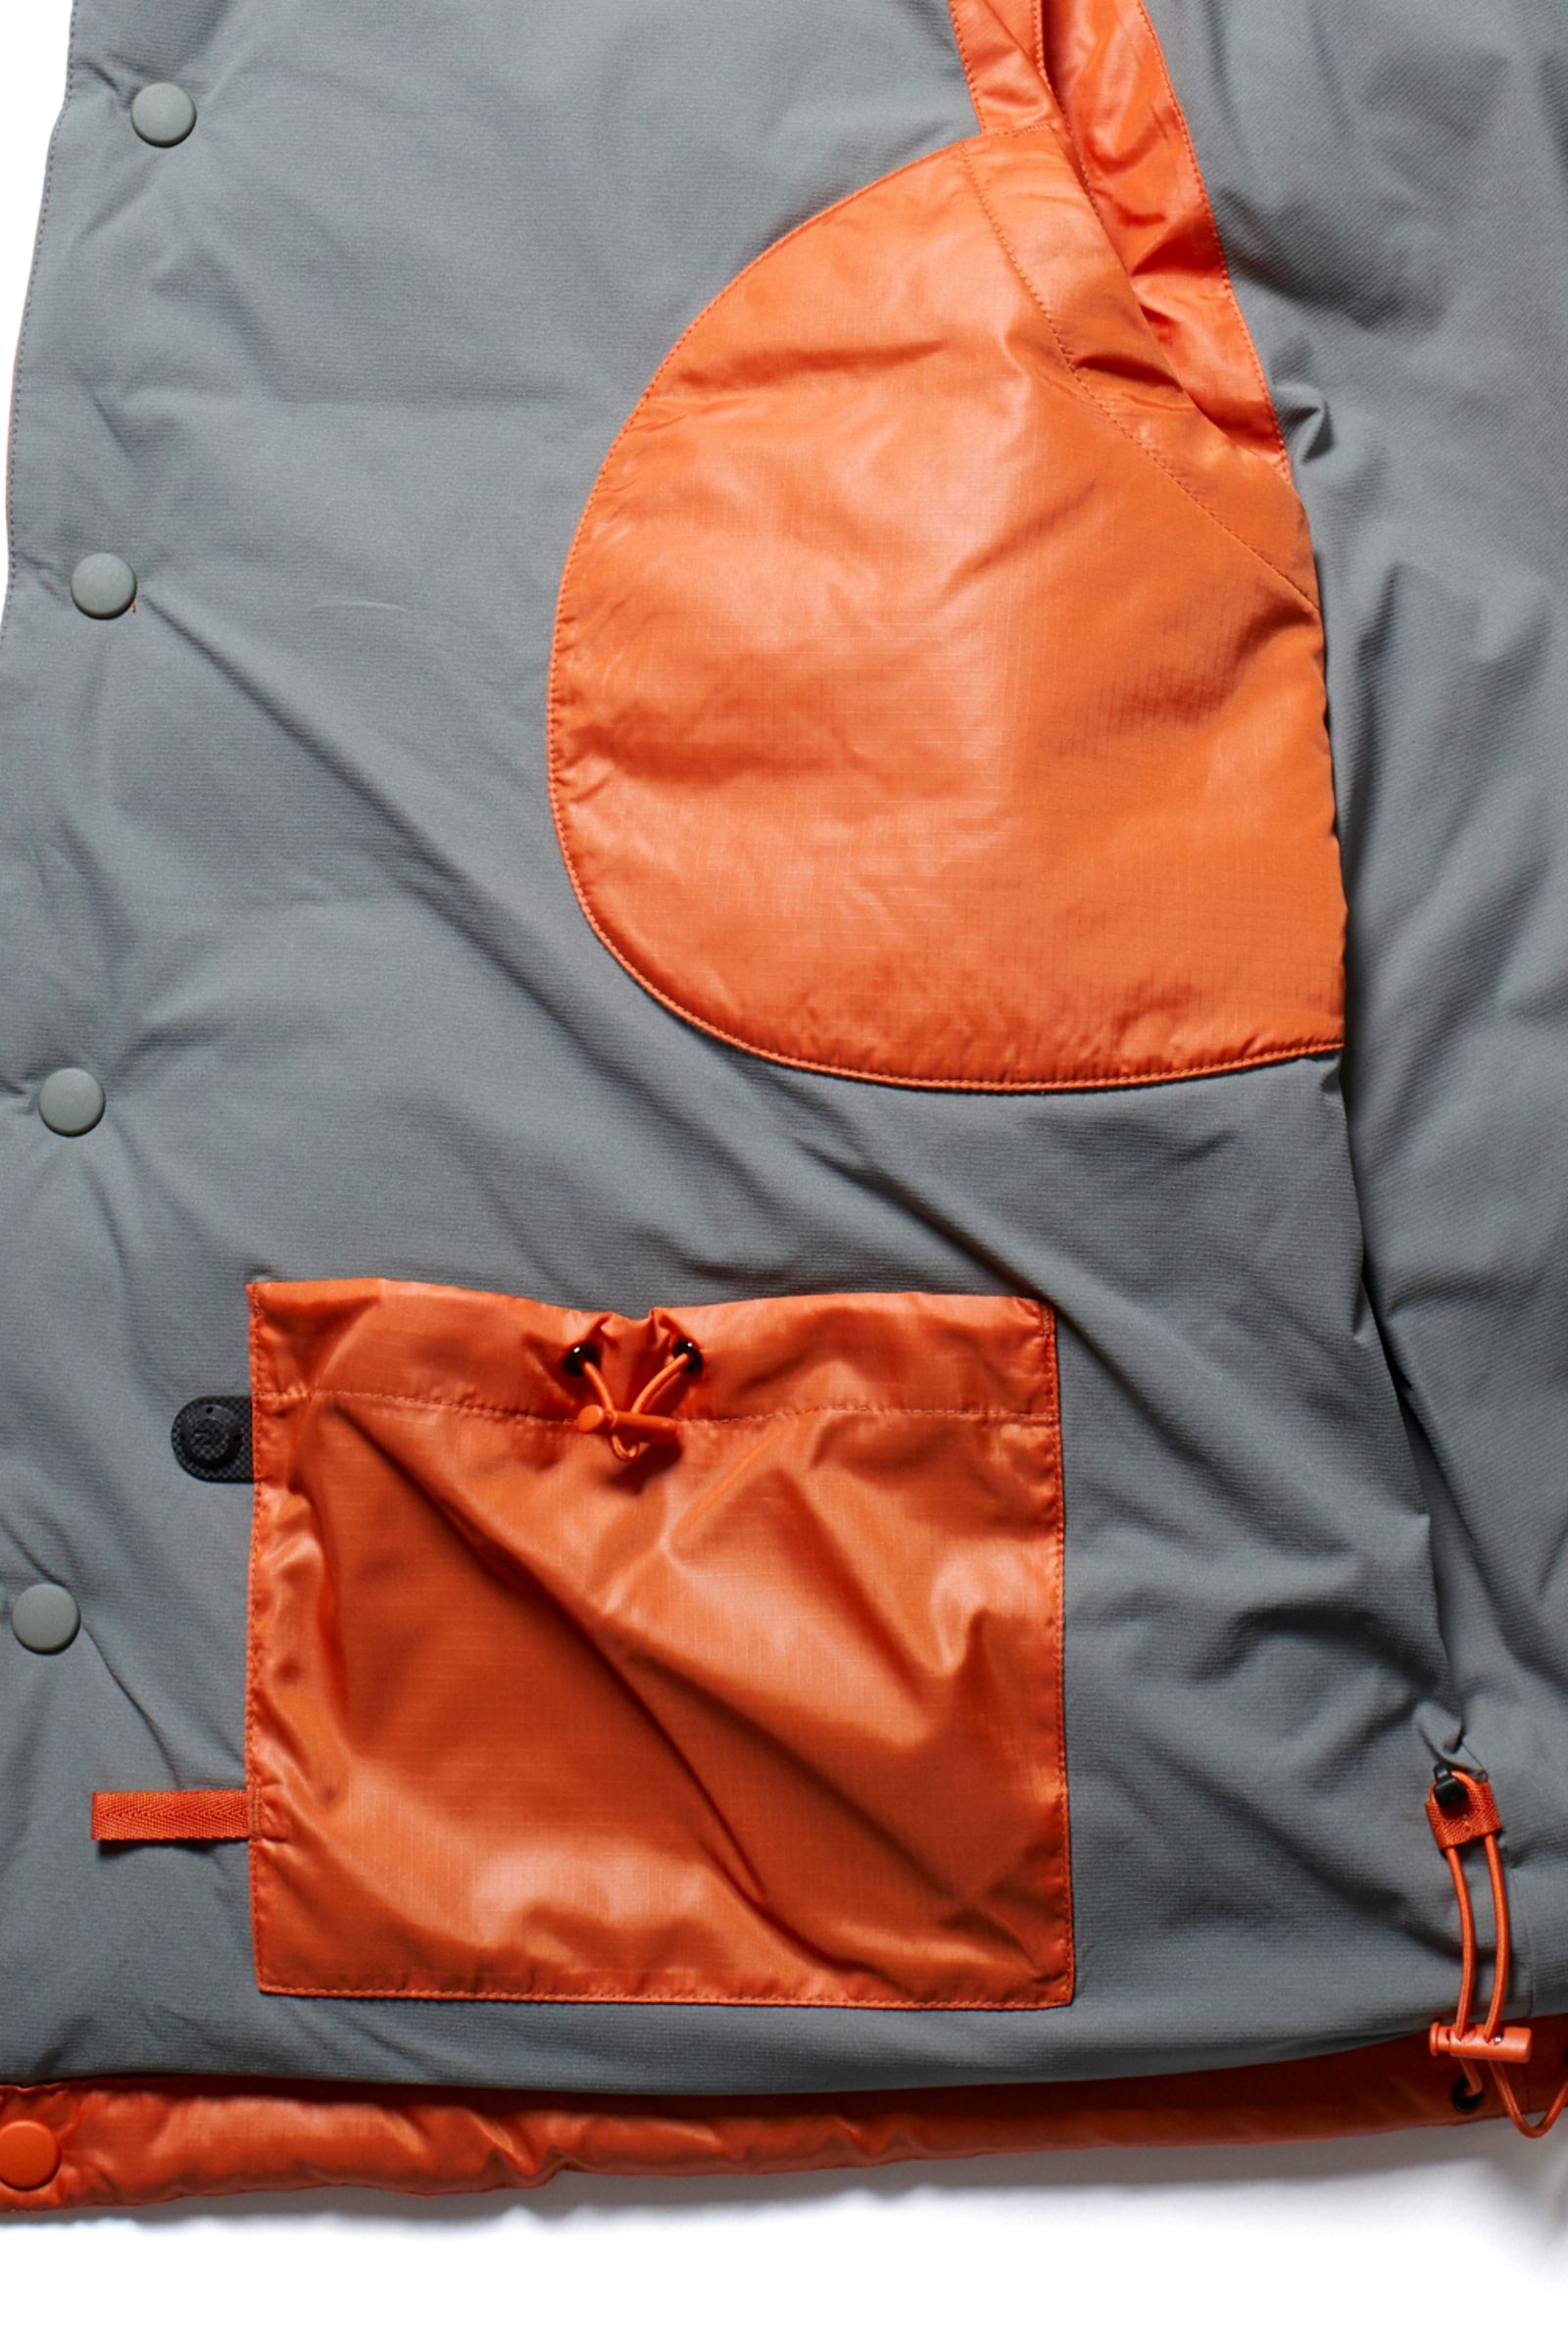 DAIWA PIER39 - ダウンベスト/tech back packer down vest -orange